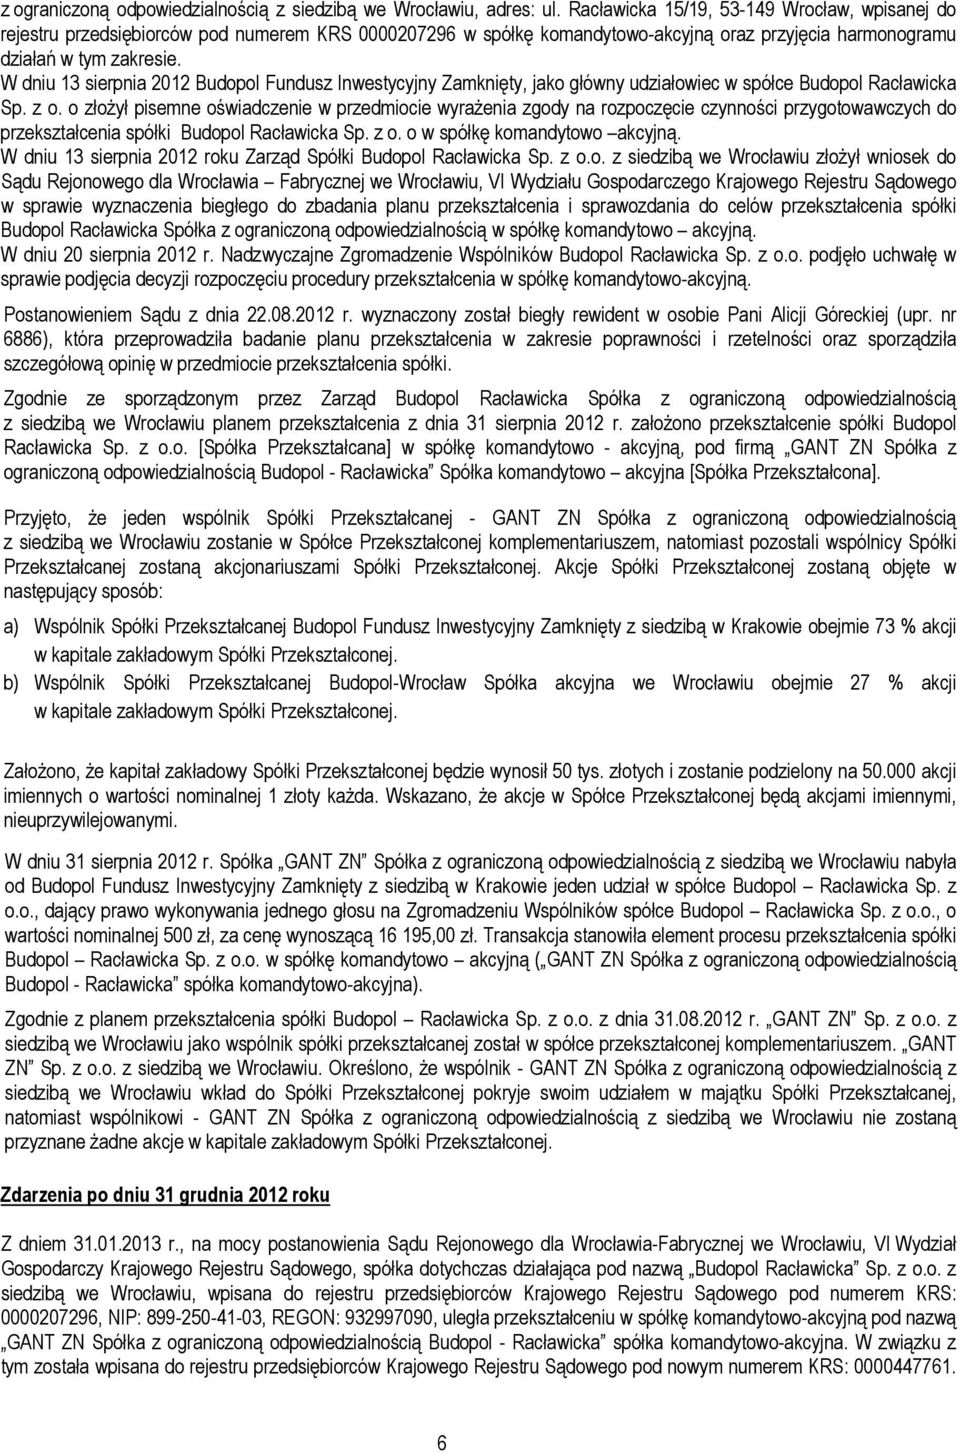 W dniu 13 sierpnia 2012 Budopol Fundusz Inwestycyjny Zamknięty, jako główny udziałowiec w spółce Budopol Racławicka Sp. z o.